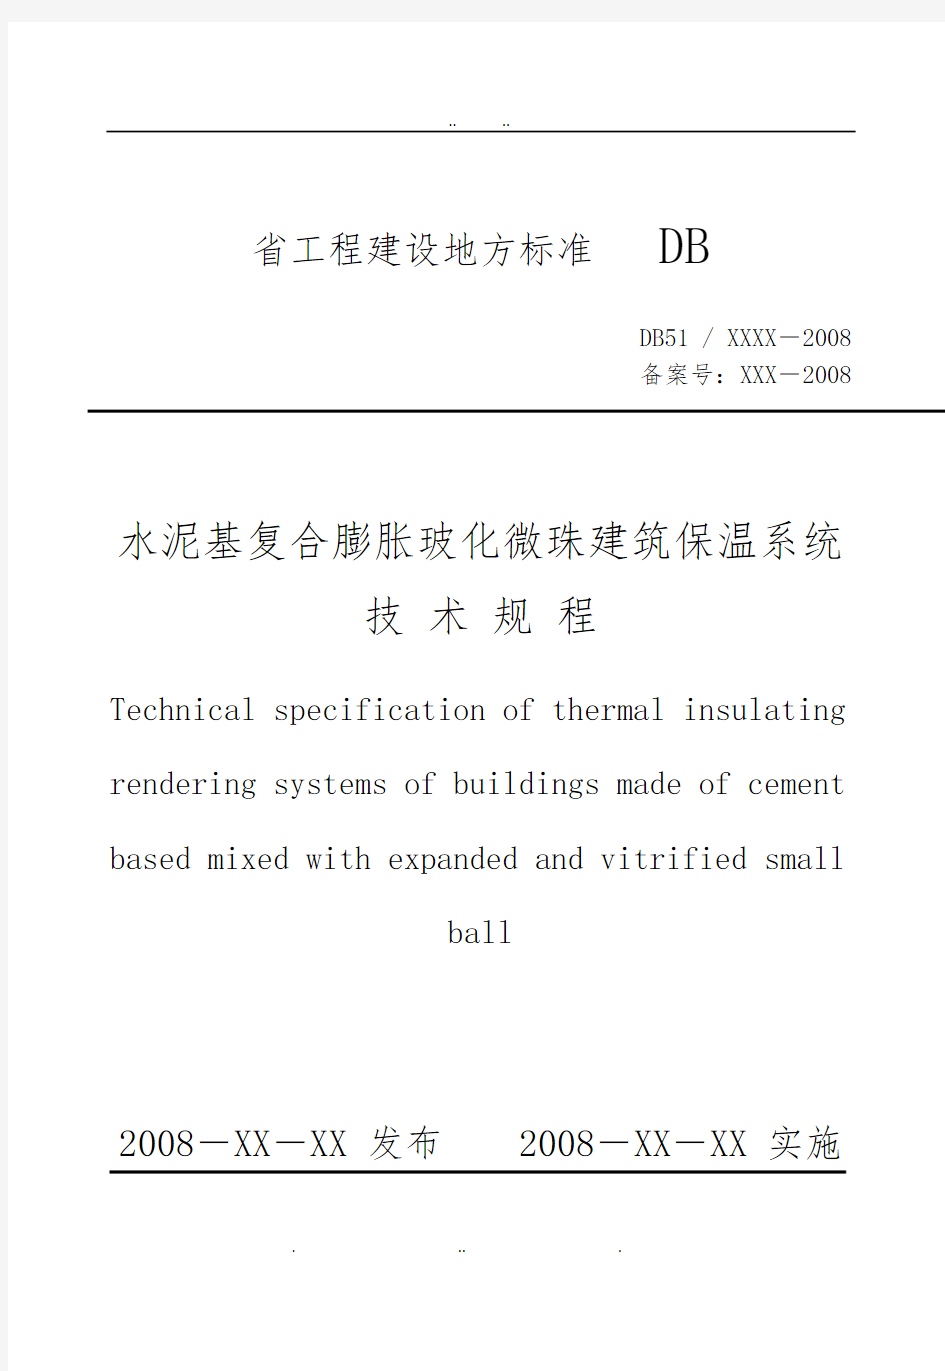 四川玻化微珠建筑保温系统标准规程完整